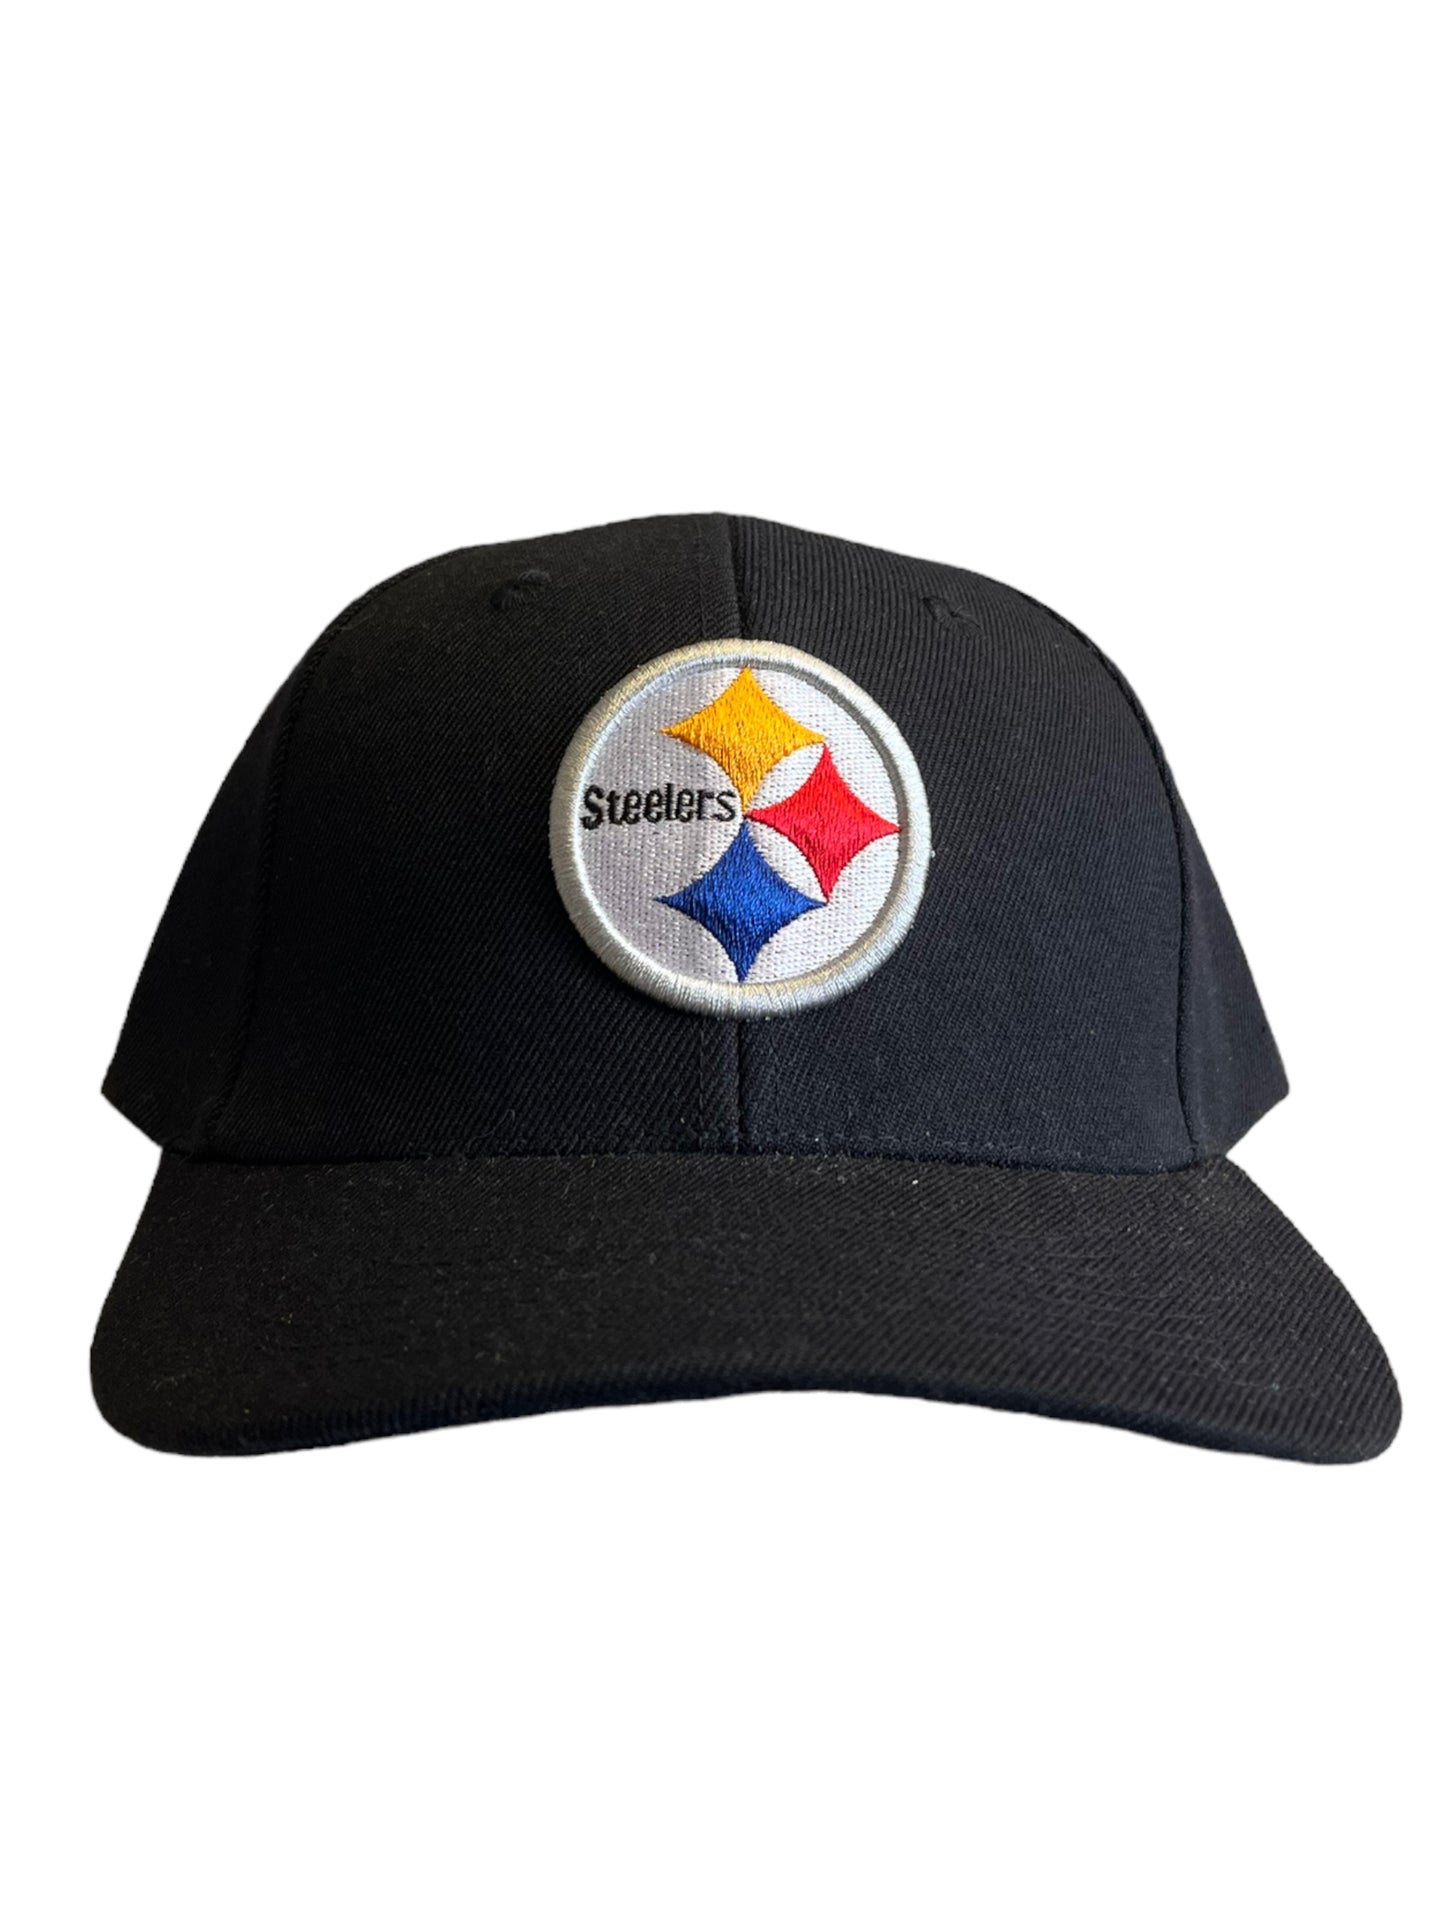 Vintage Pittsburgh Steelers Dad Hat Brand New